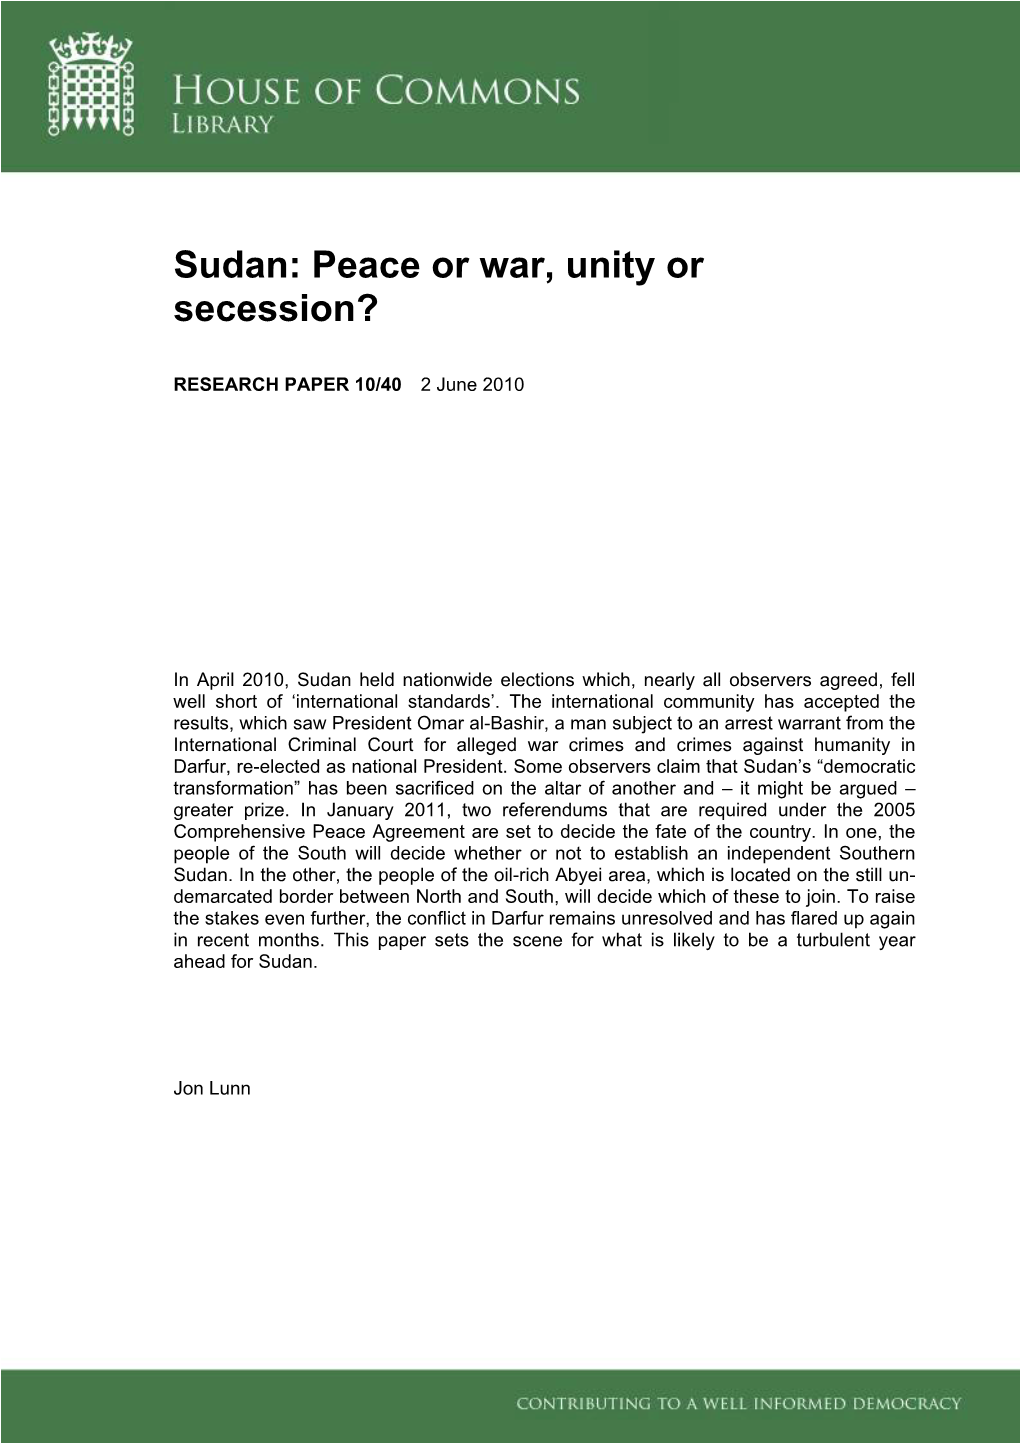 Sudan: Peace Or War, Unity Or Secession?